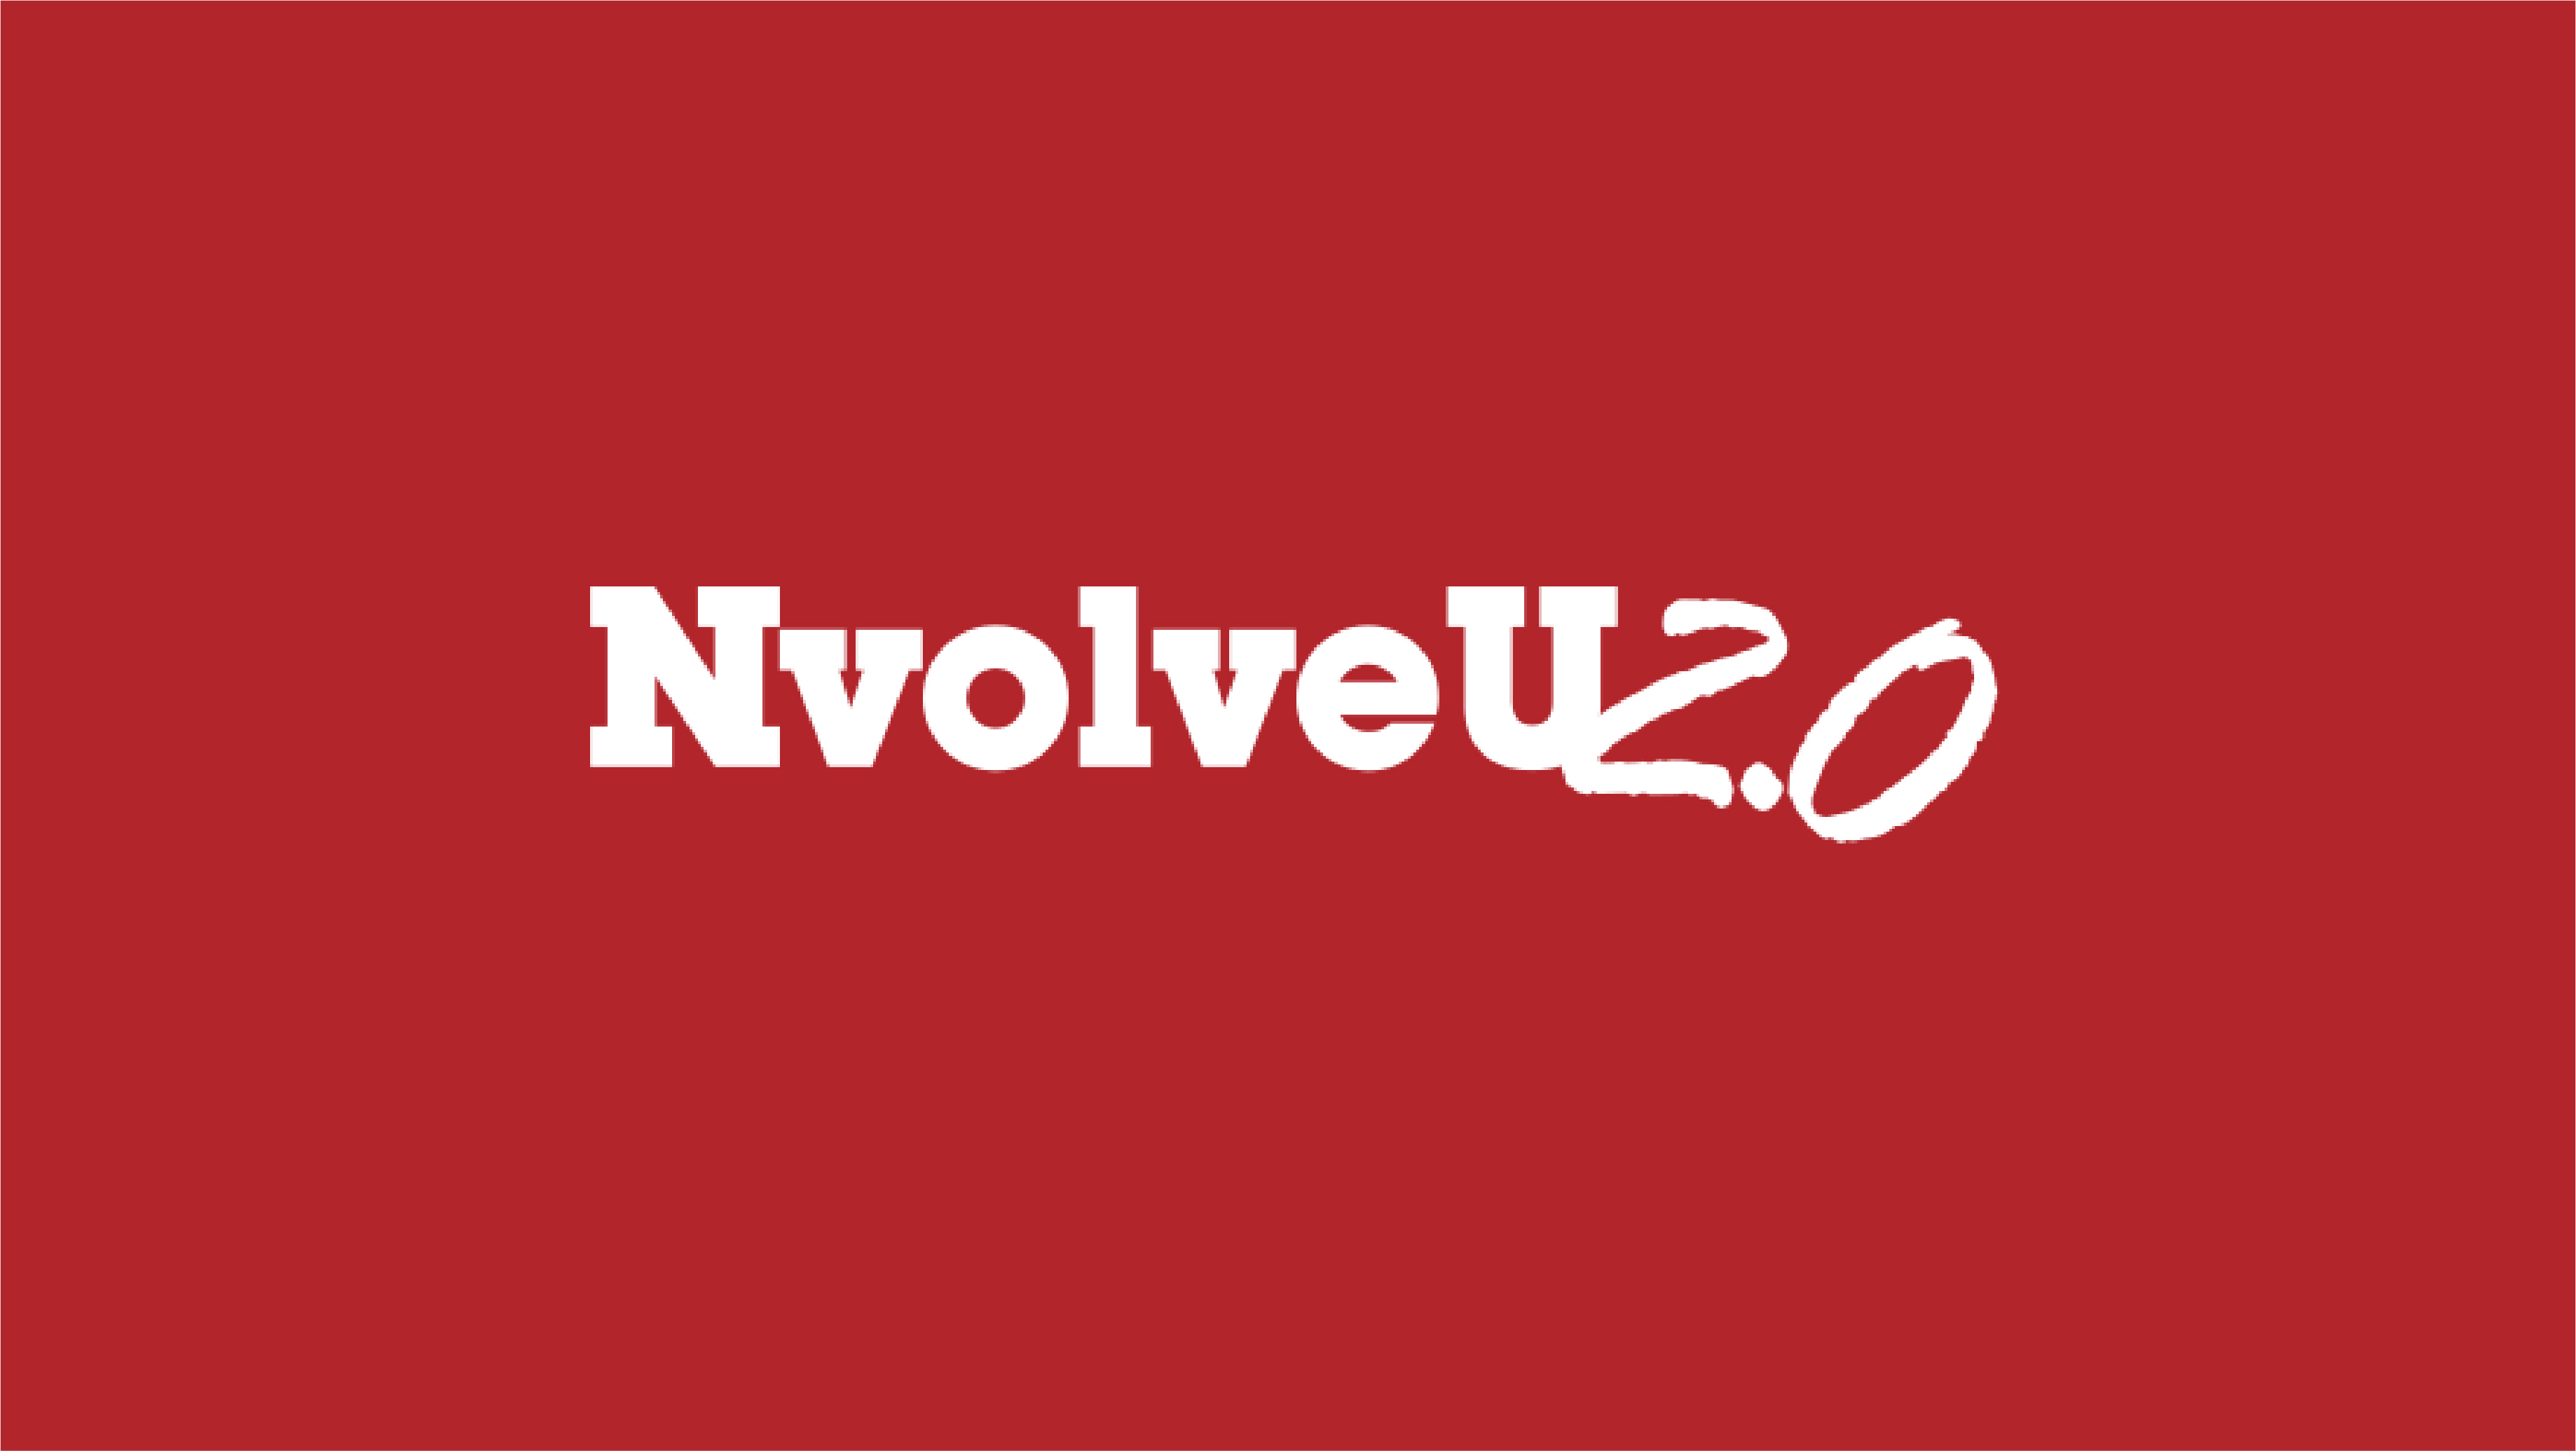 How well do you know NvolveU?